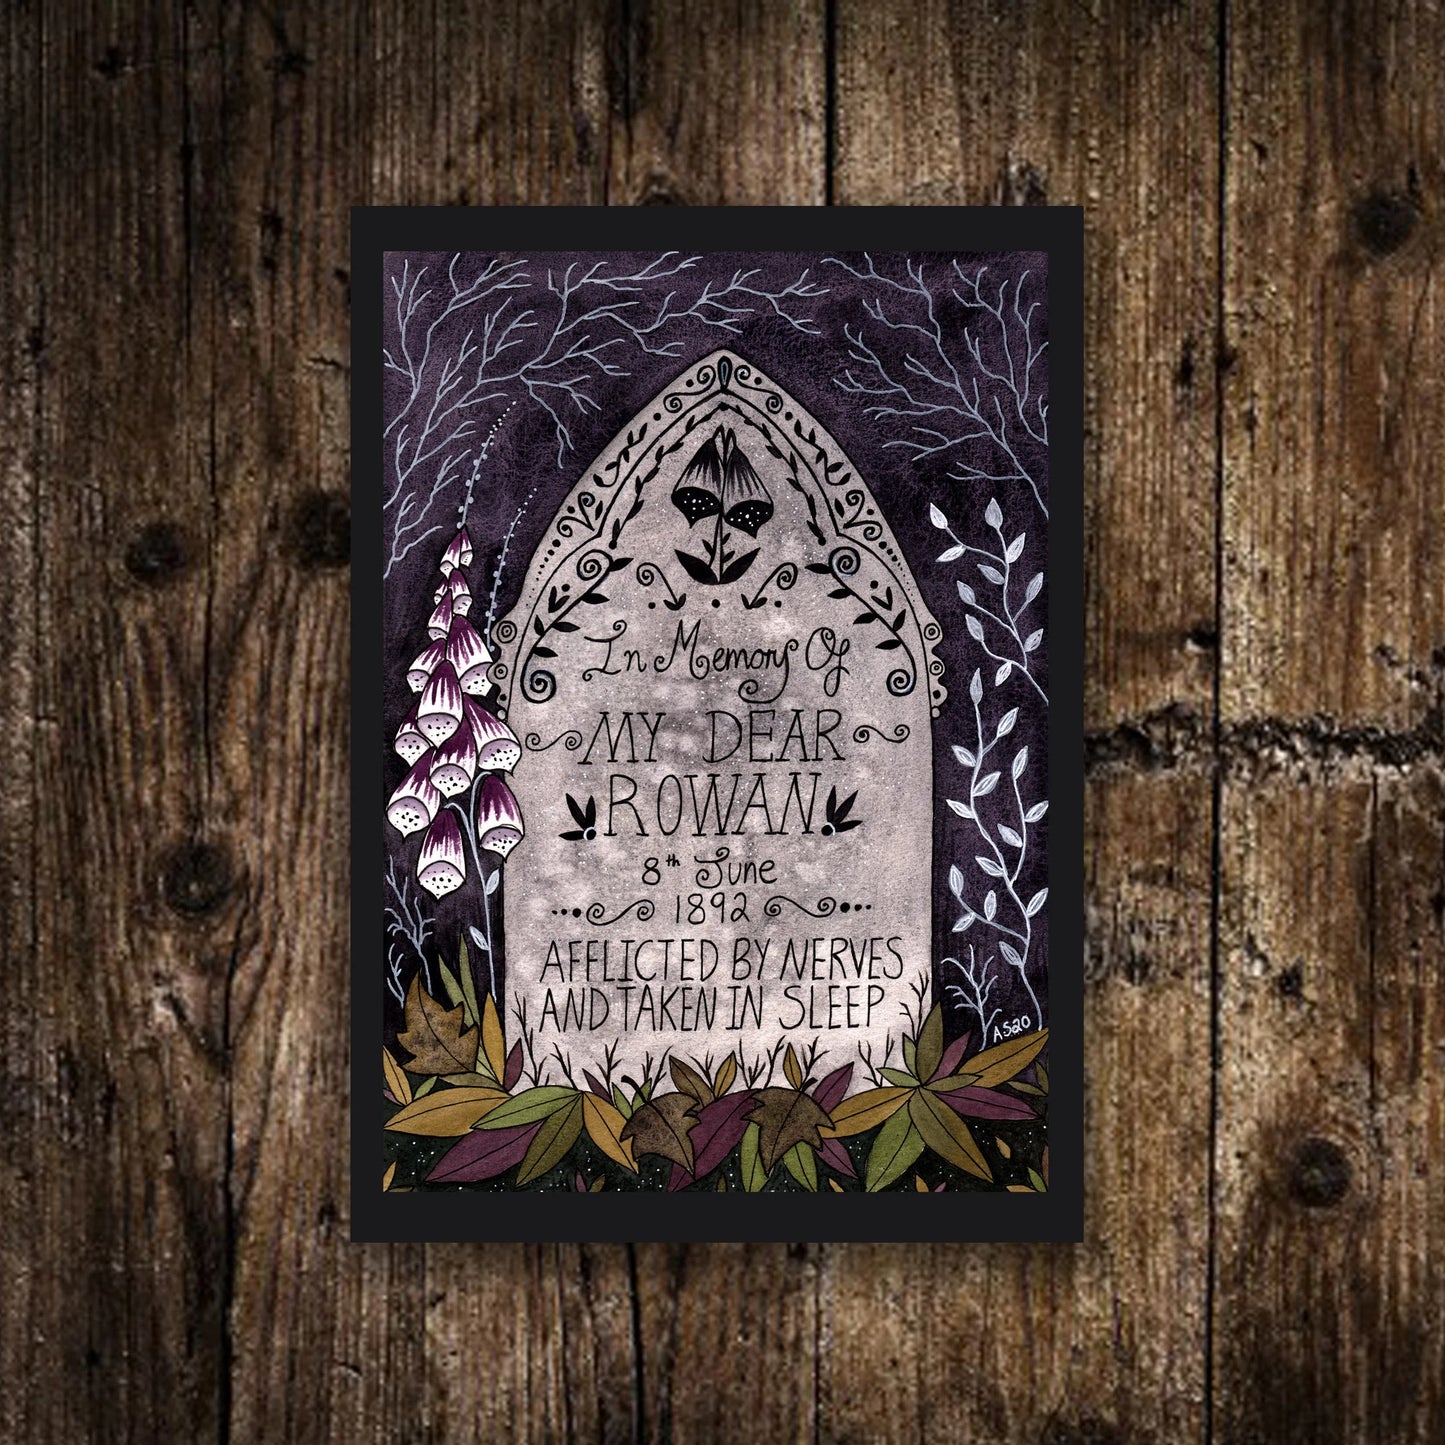 Mini A6 Rowan's Grave Print - Small Foxglove Bride's Gravestone Illustration - Gothic Victorian Print - Spooky Poisonous Foxglove Decor